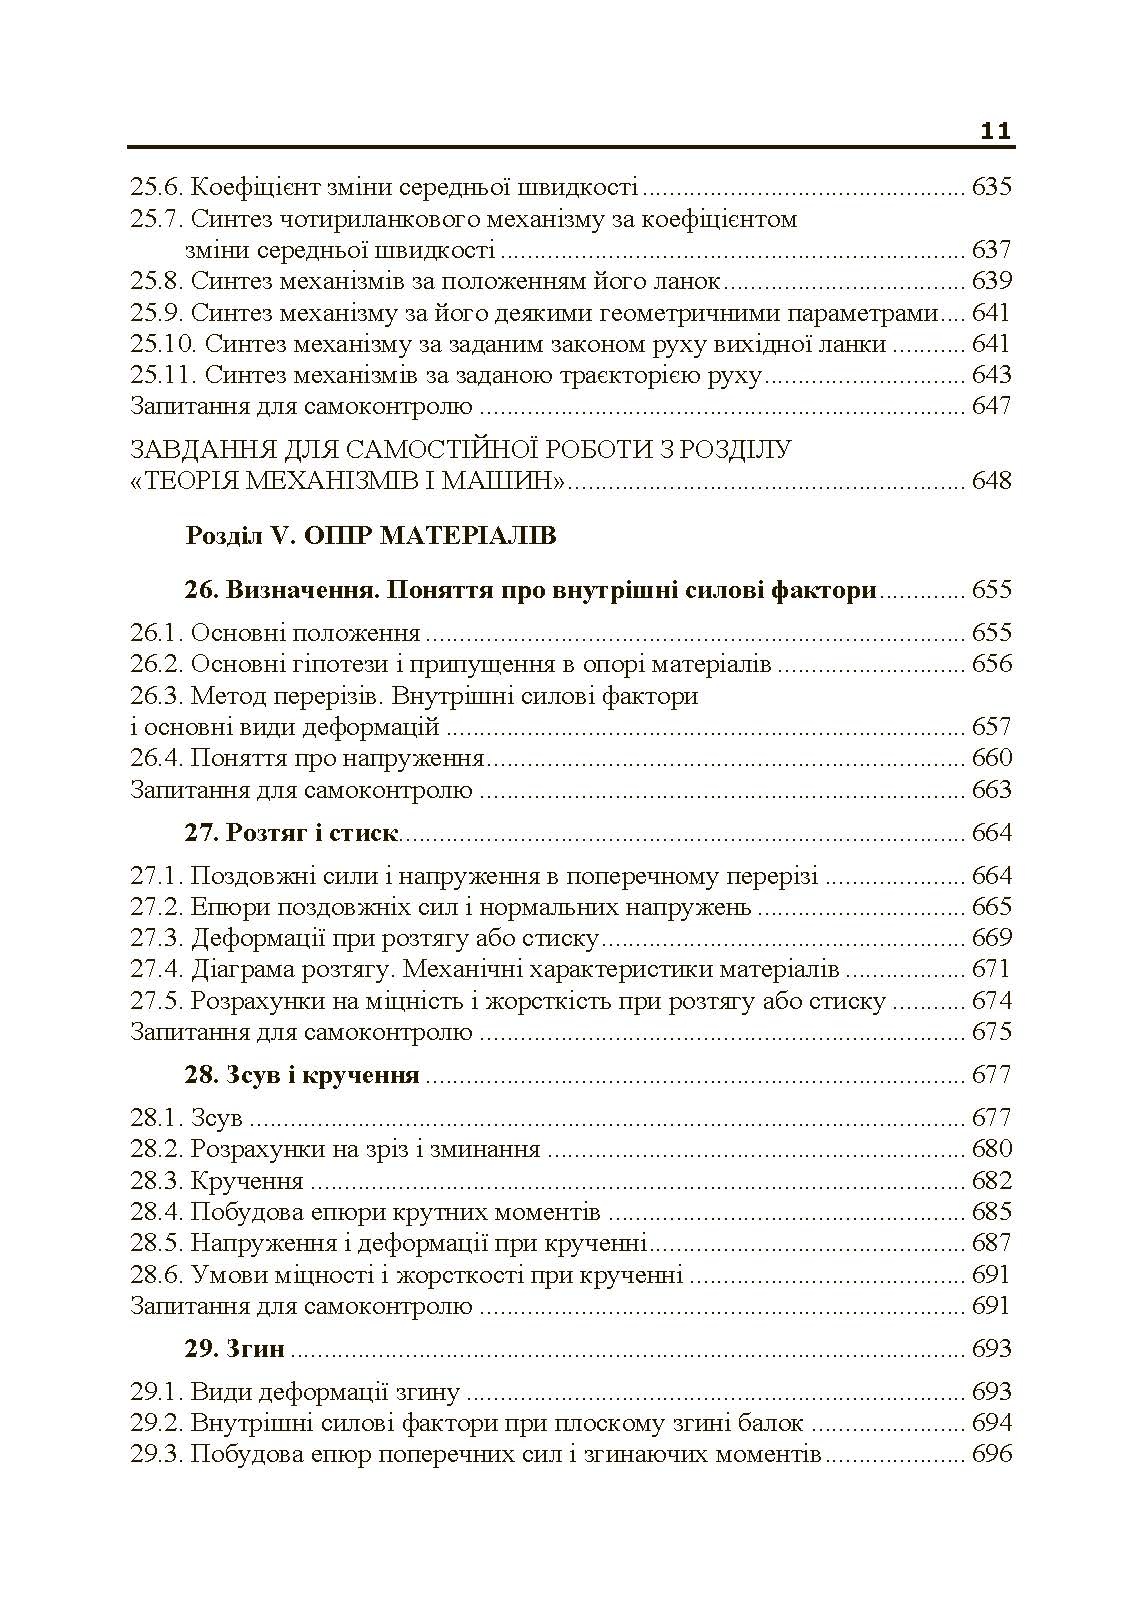 Теоретична і прикладна механіка. Частина I  (2019 год). Автор — В.М. Булгаков, О.М. Черниш. 